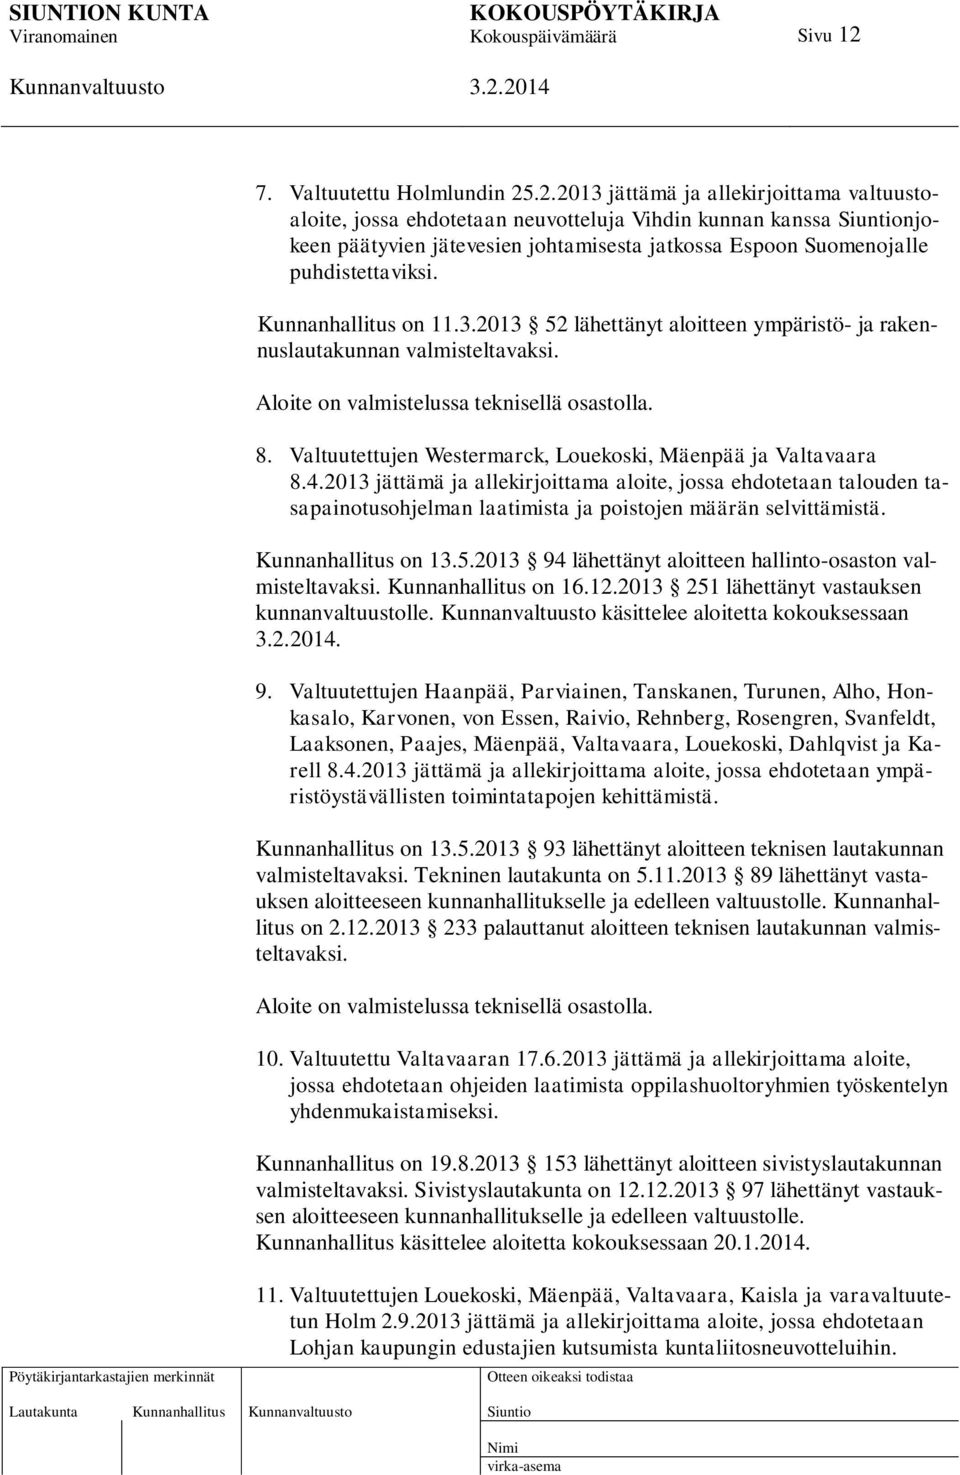 Valtuutettujen Westermarck, Louekoski, Mäenpää ja Valtavaara 8.4.2013 jättämä ja allekirjoittama aloite, jossa ehdotetaan talouden tasapainotusohjelman laatimista ja poistojen määrän selvittämistä.